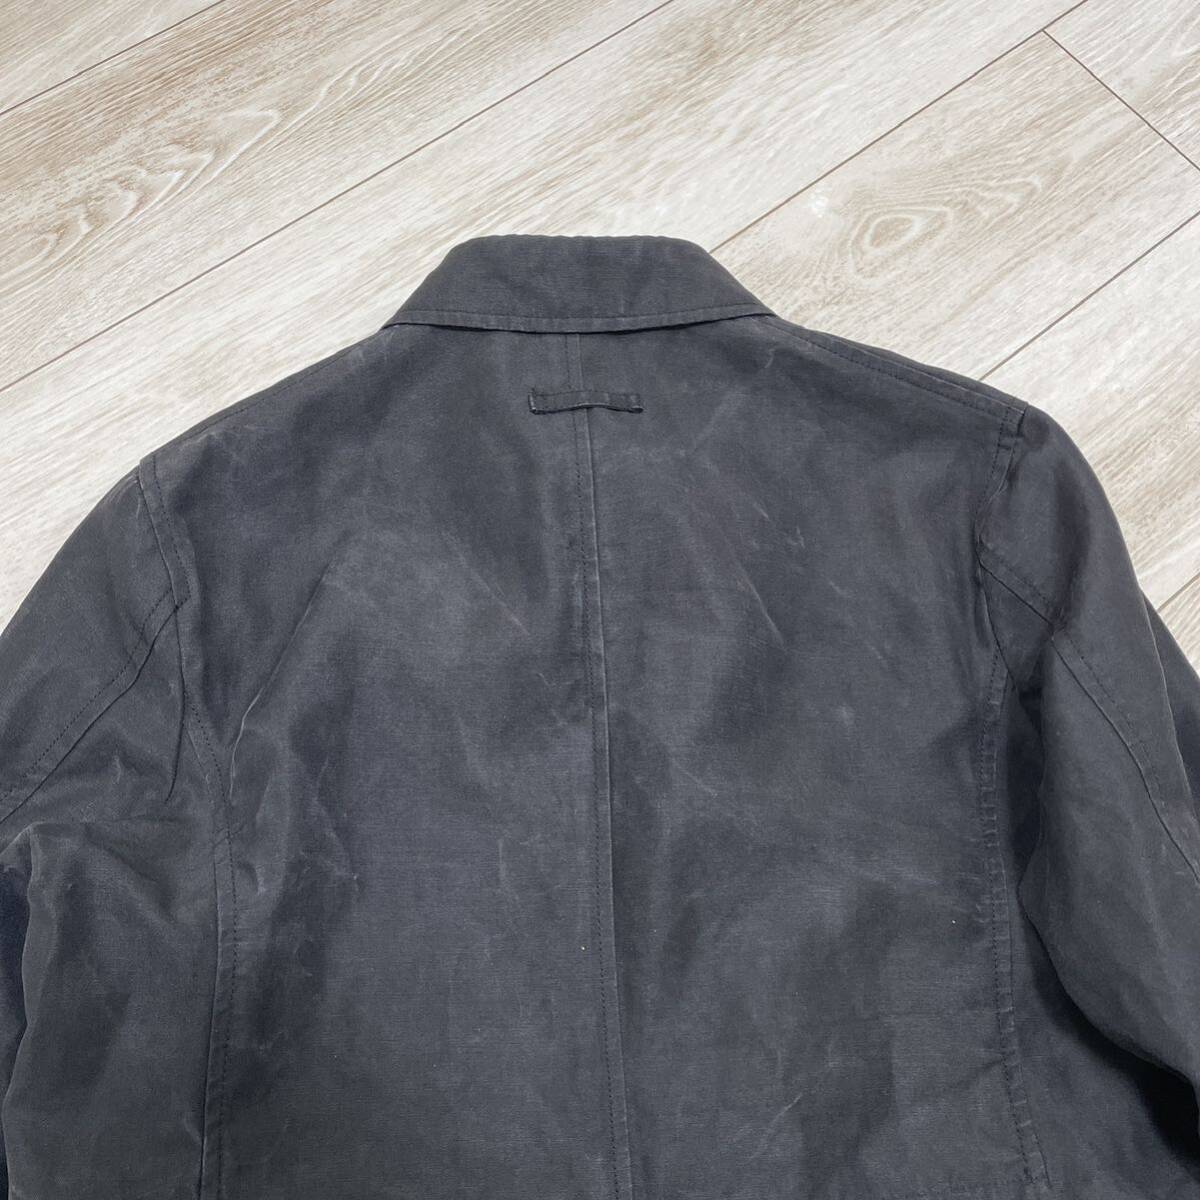 超希少 Jean Paul GAULTIER HOMME コート リネン100% ステンカラーコート 黒 ブラック 麻 ロングコート 1スタ ゴルチェオムの画像5